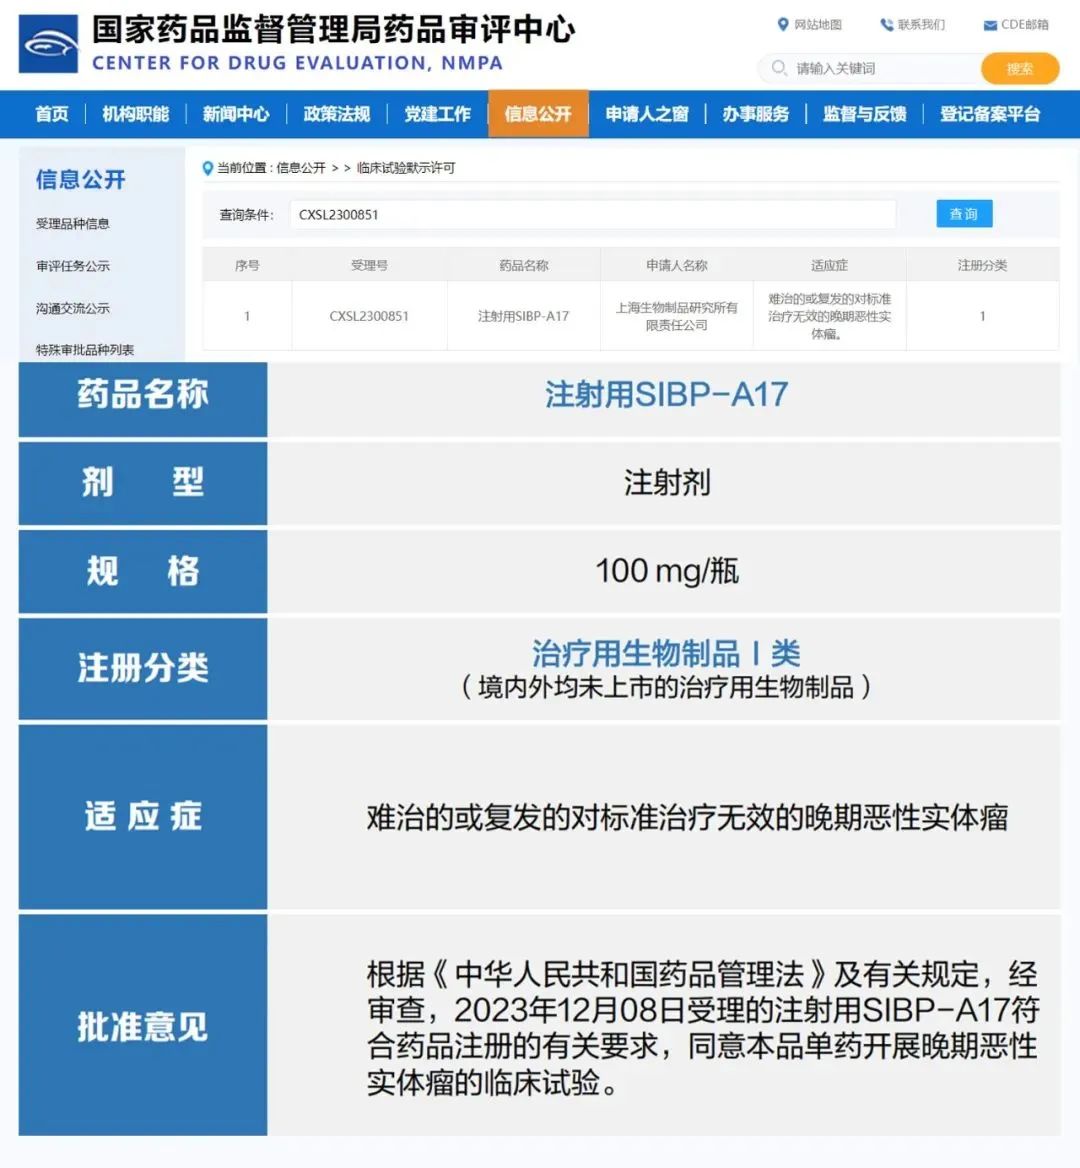 美迪西助力 | 中国生物上海生物制品研究所创新型ADC药物获批临床